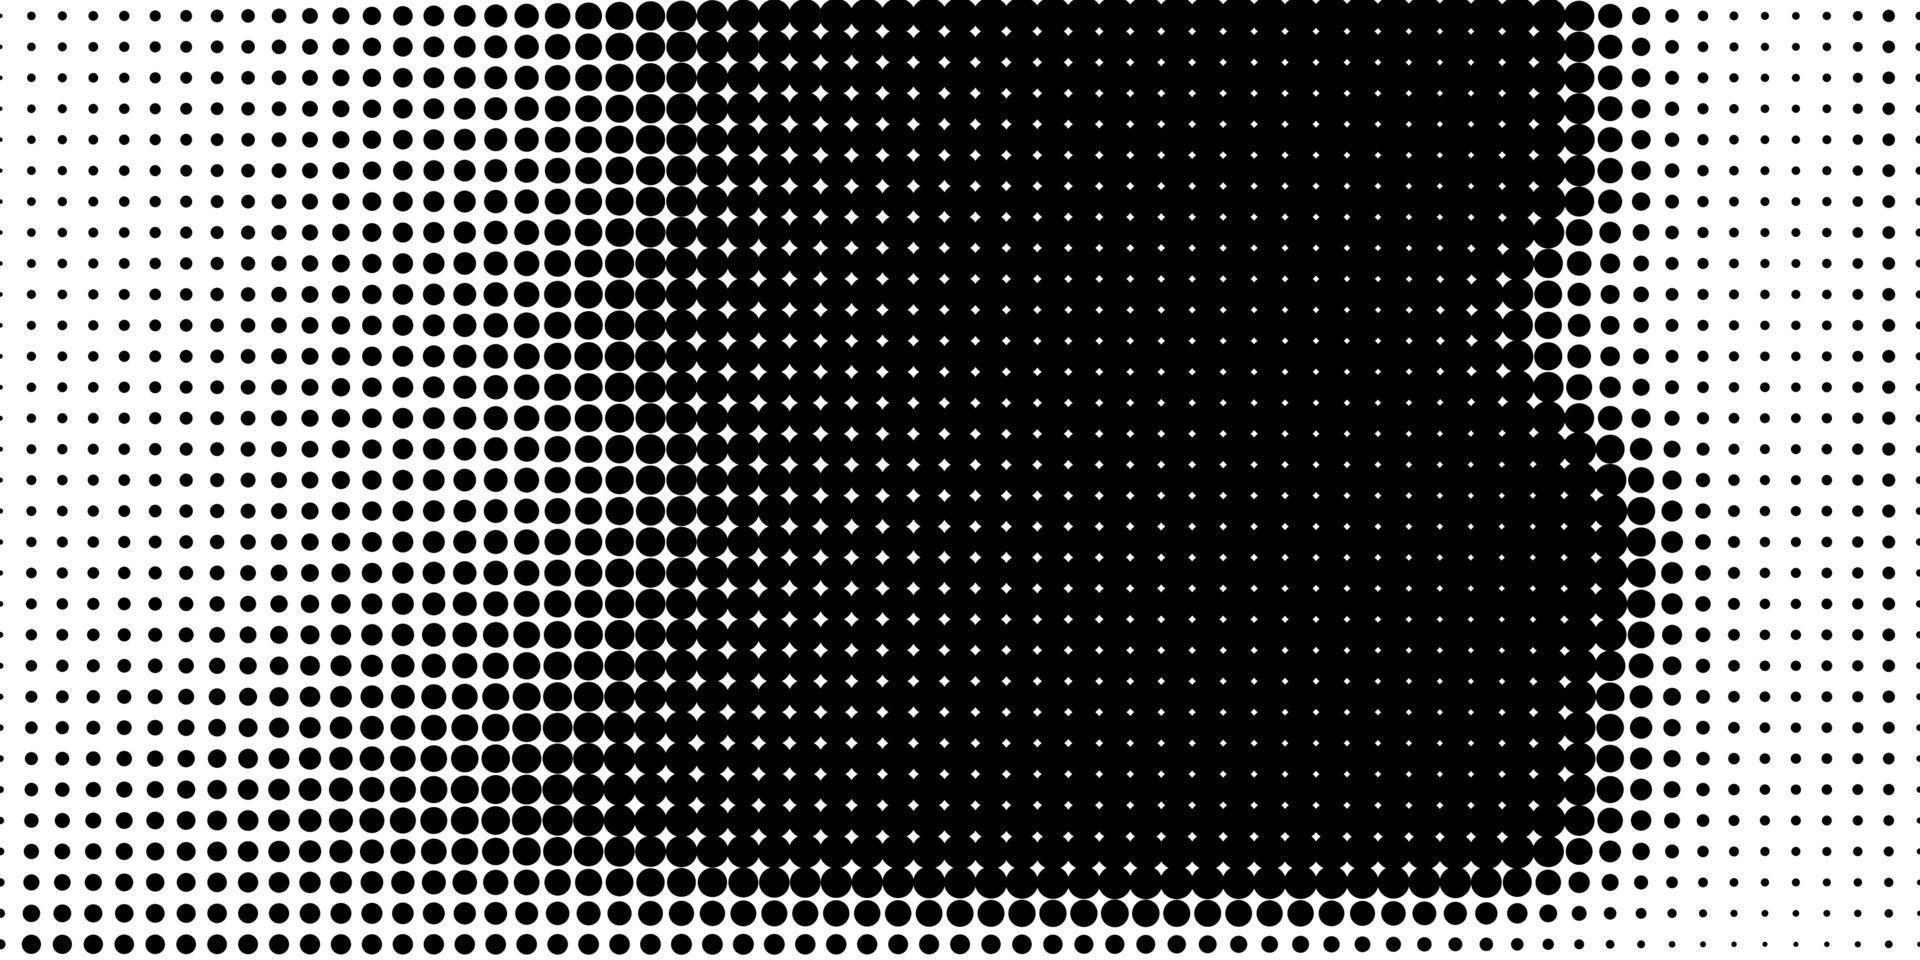 meio-tom em estilo abstrato. textura de vetor geométrico banner retro. impressão moderna. fundo branco e preto. efeito de luz.